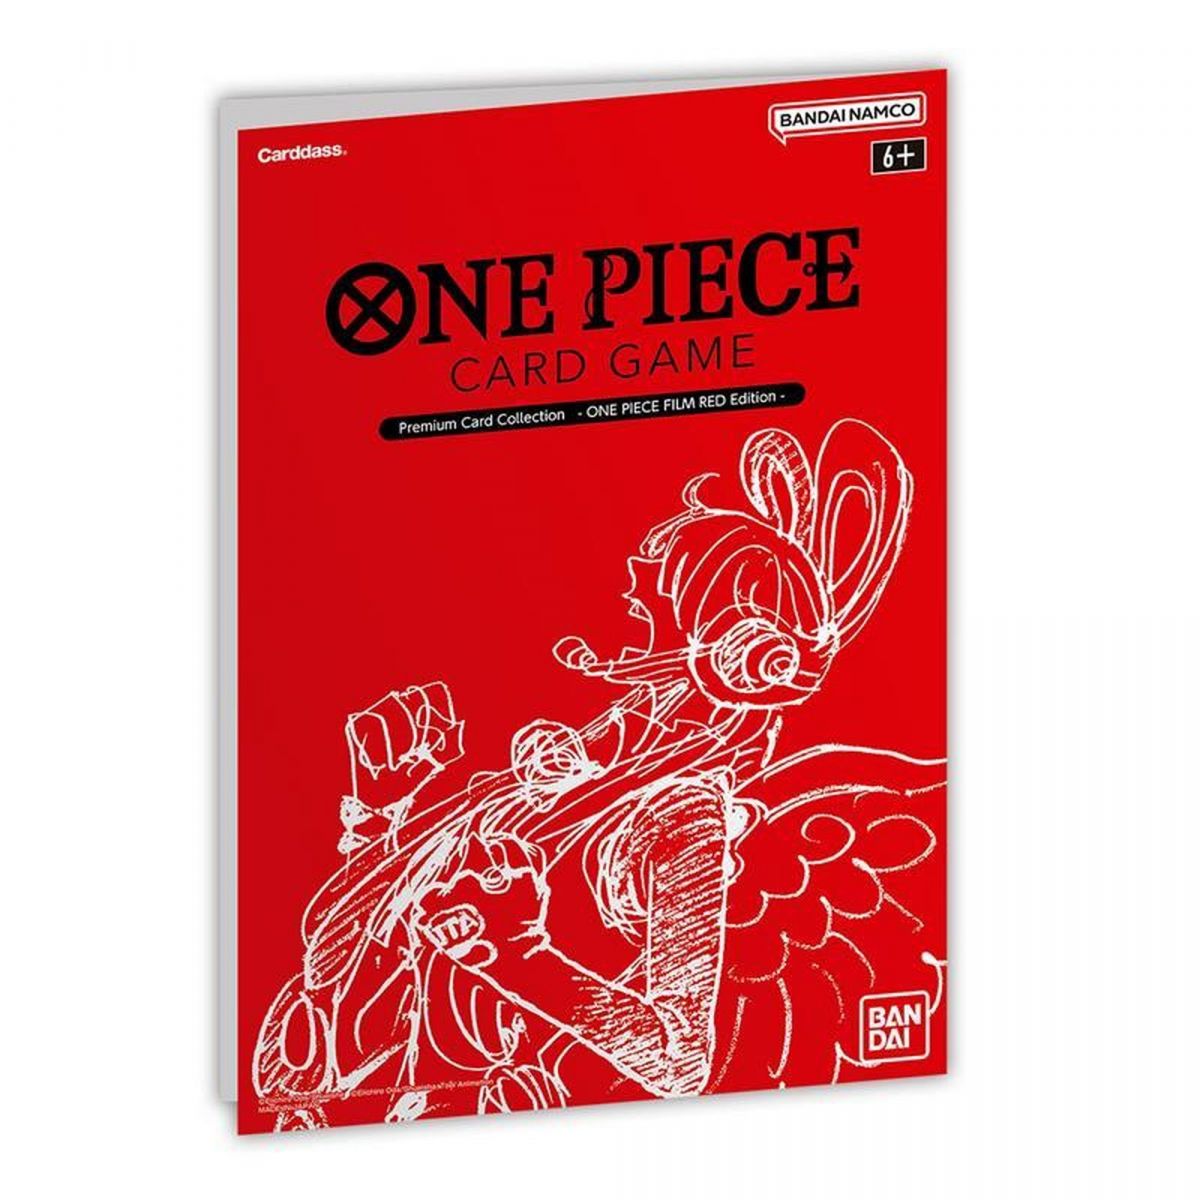 One Piece CG - OP01 - (C) OP01-103 - Scratchmen Apoo